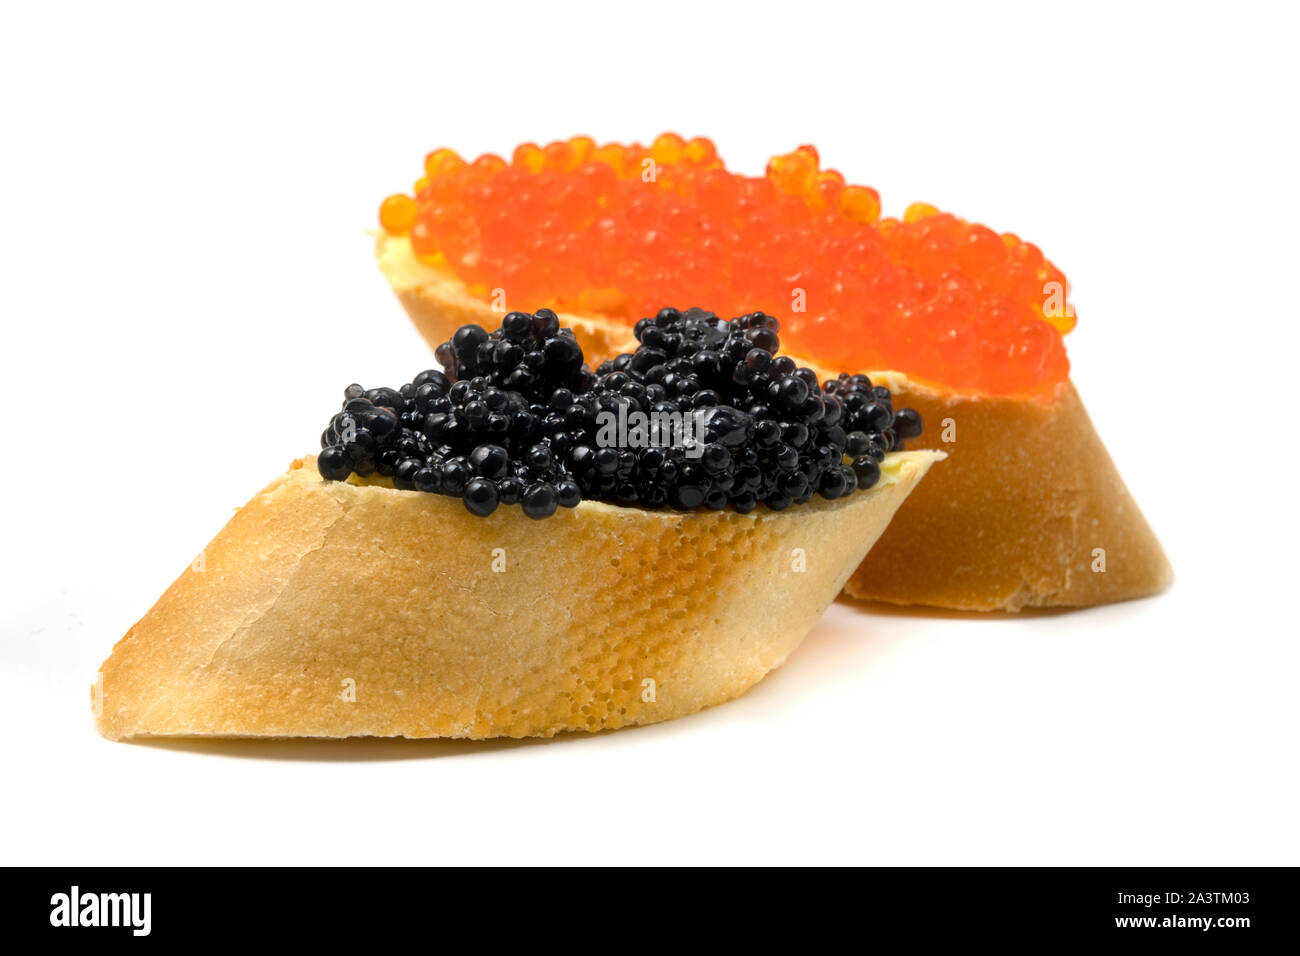 Huevas de salmón y caviar de esturión sobre un fondo blanco. Foto de stock